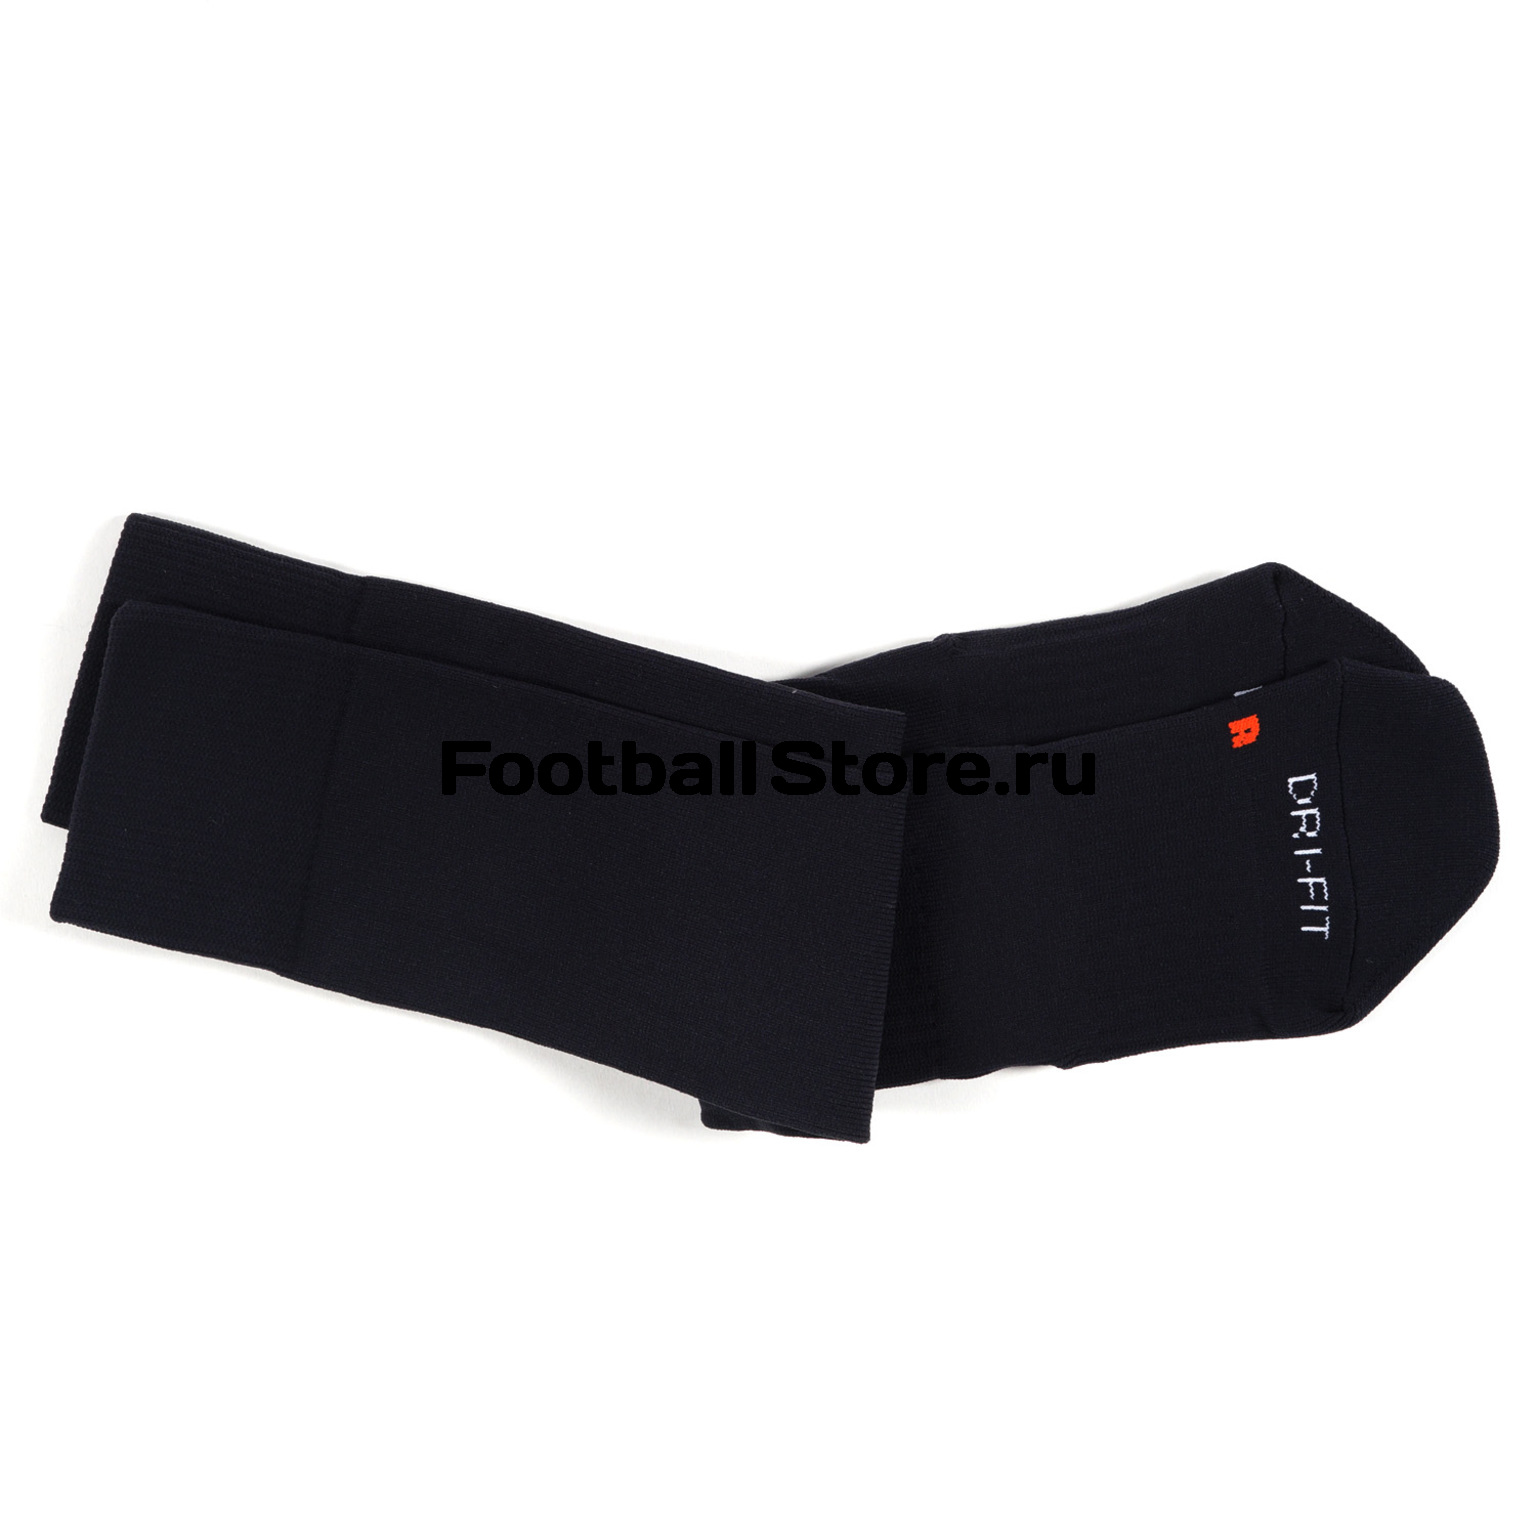 Гетры Nike Classic Football Dri-fit SX4120-001